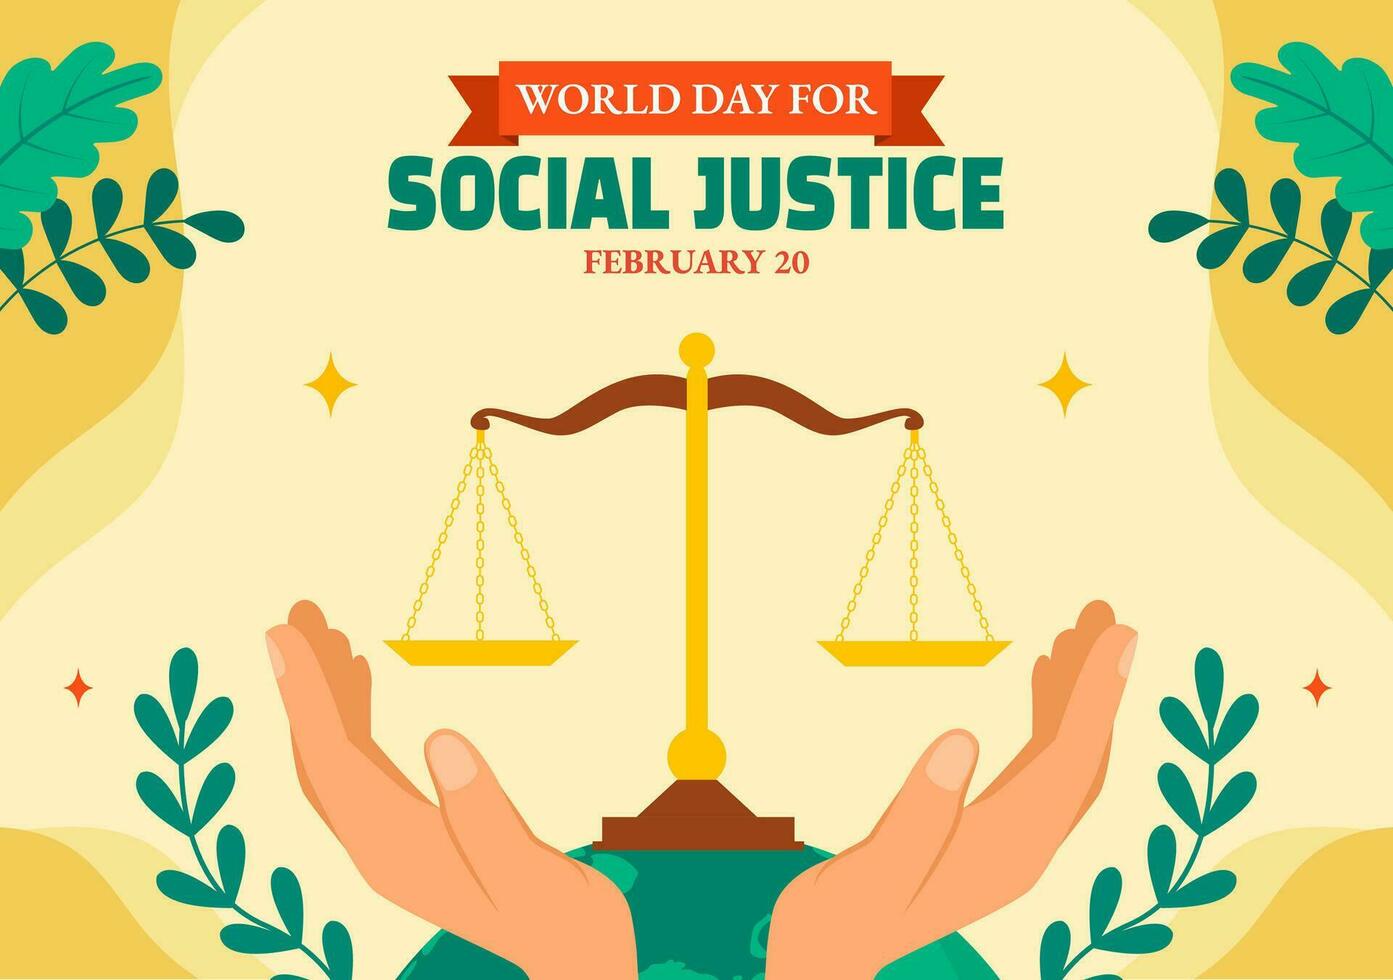 social Justice journée social médias Contexte plat dessin animé main tiré modèles illustration vecteur